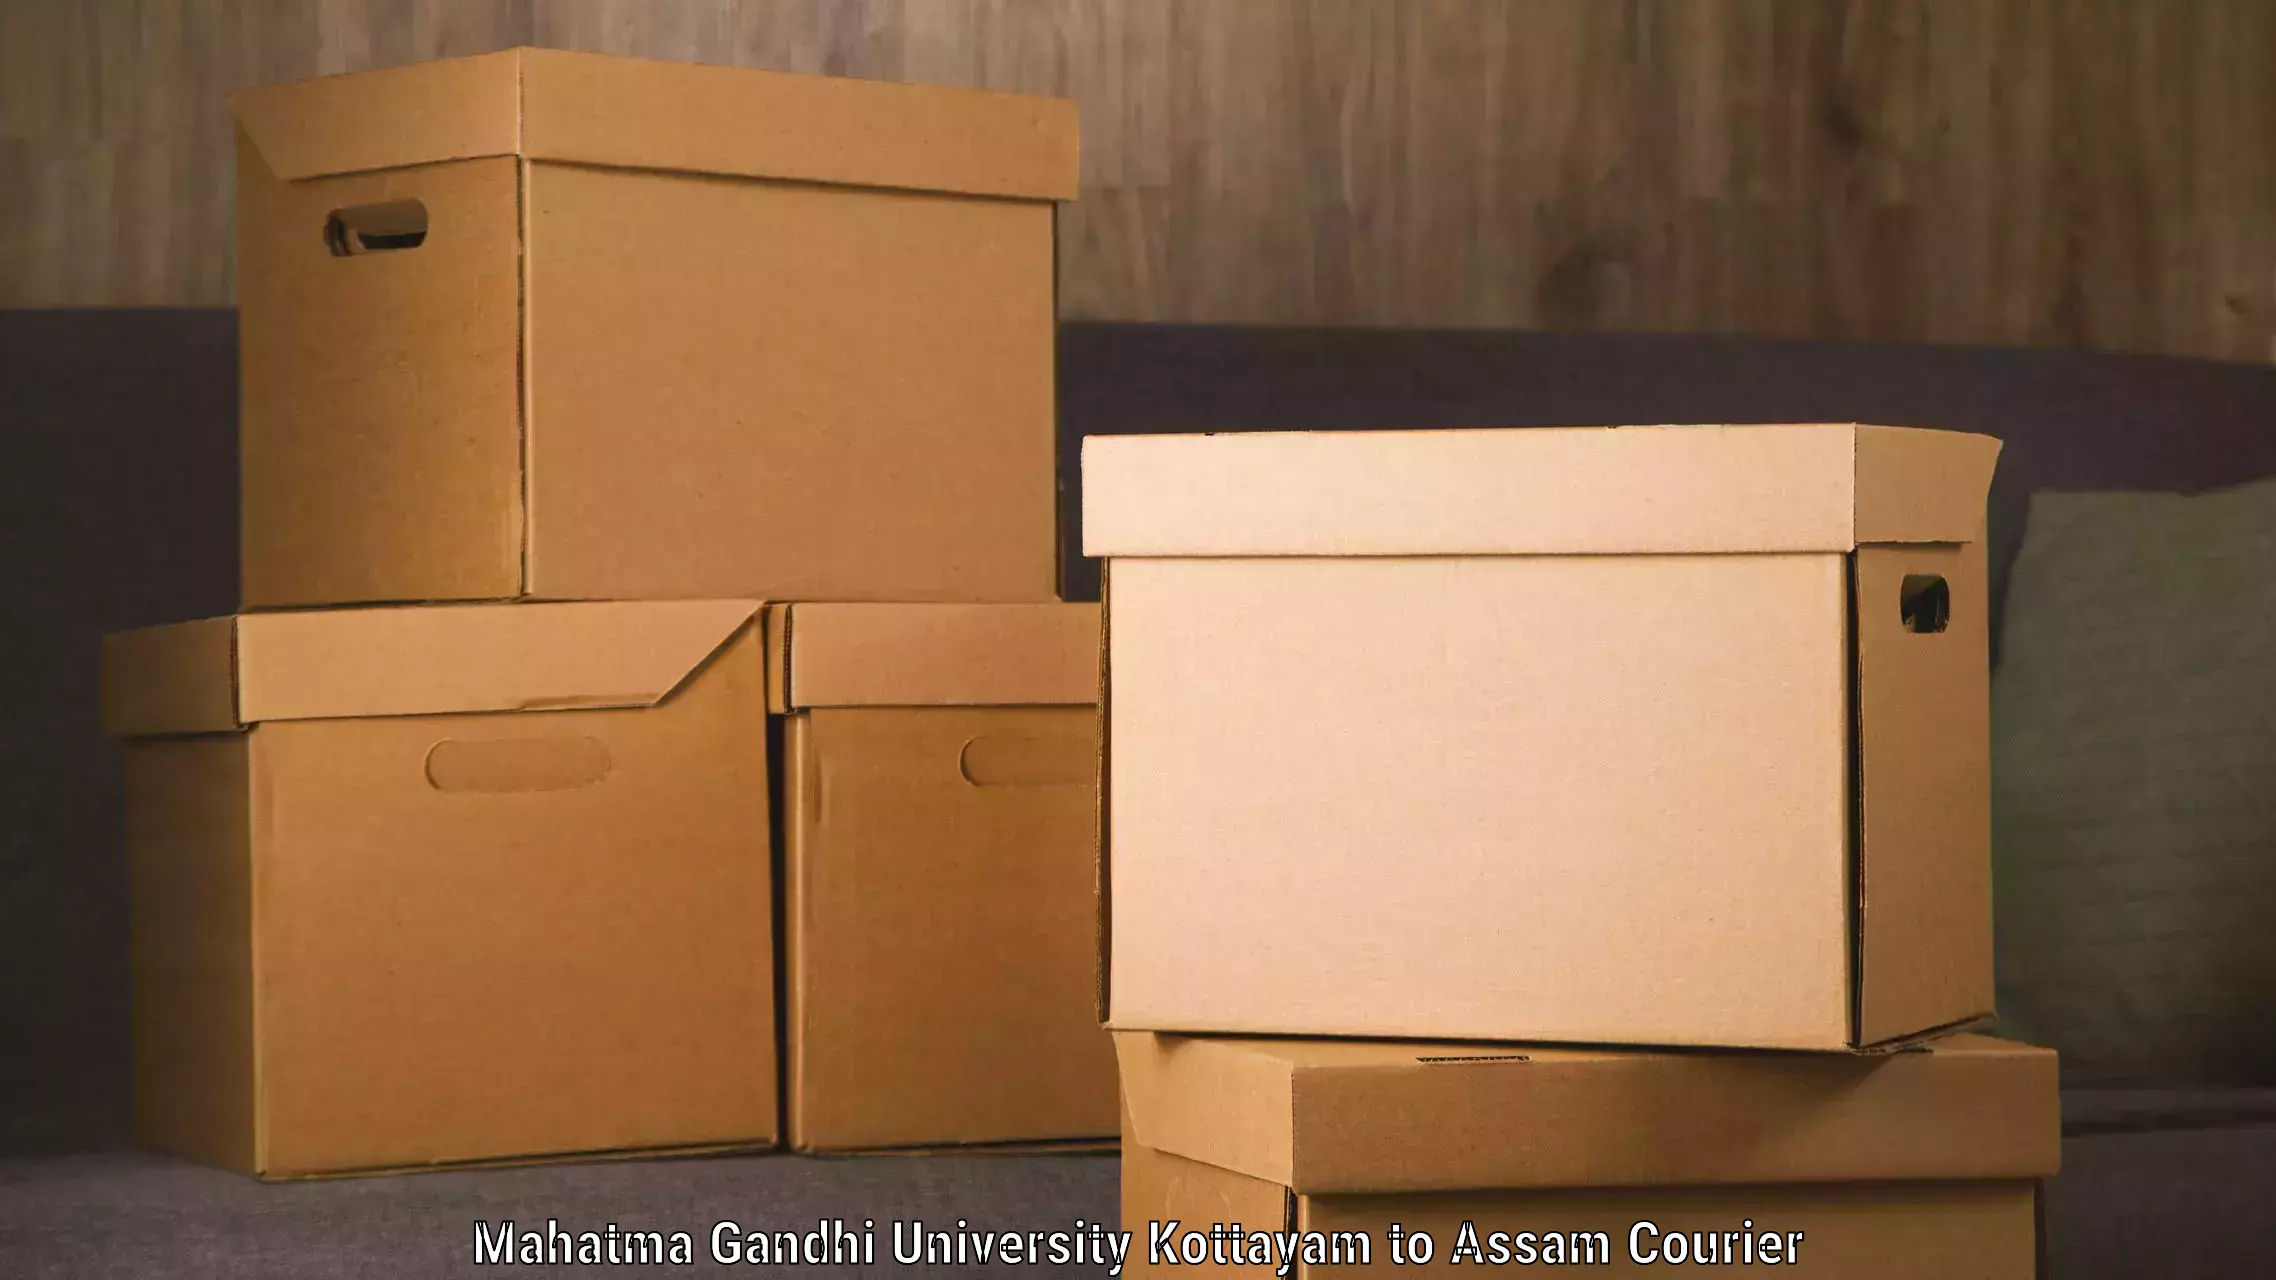 Express courier capabilities Mahatma Gandhi University Kottayam to Bhaga